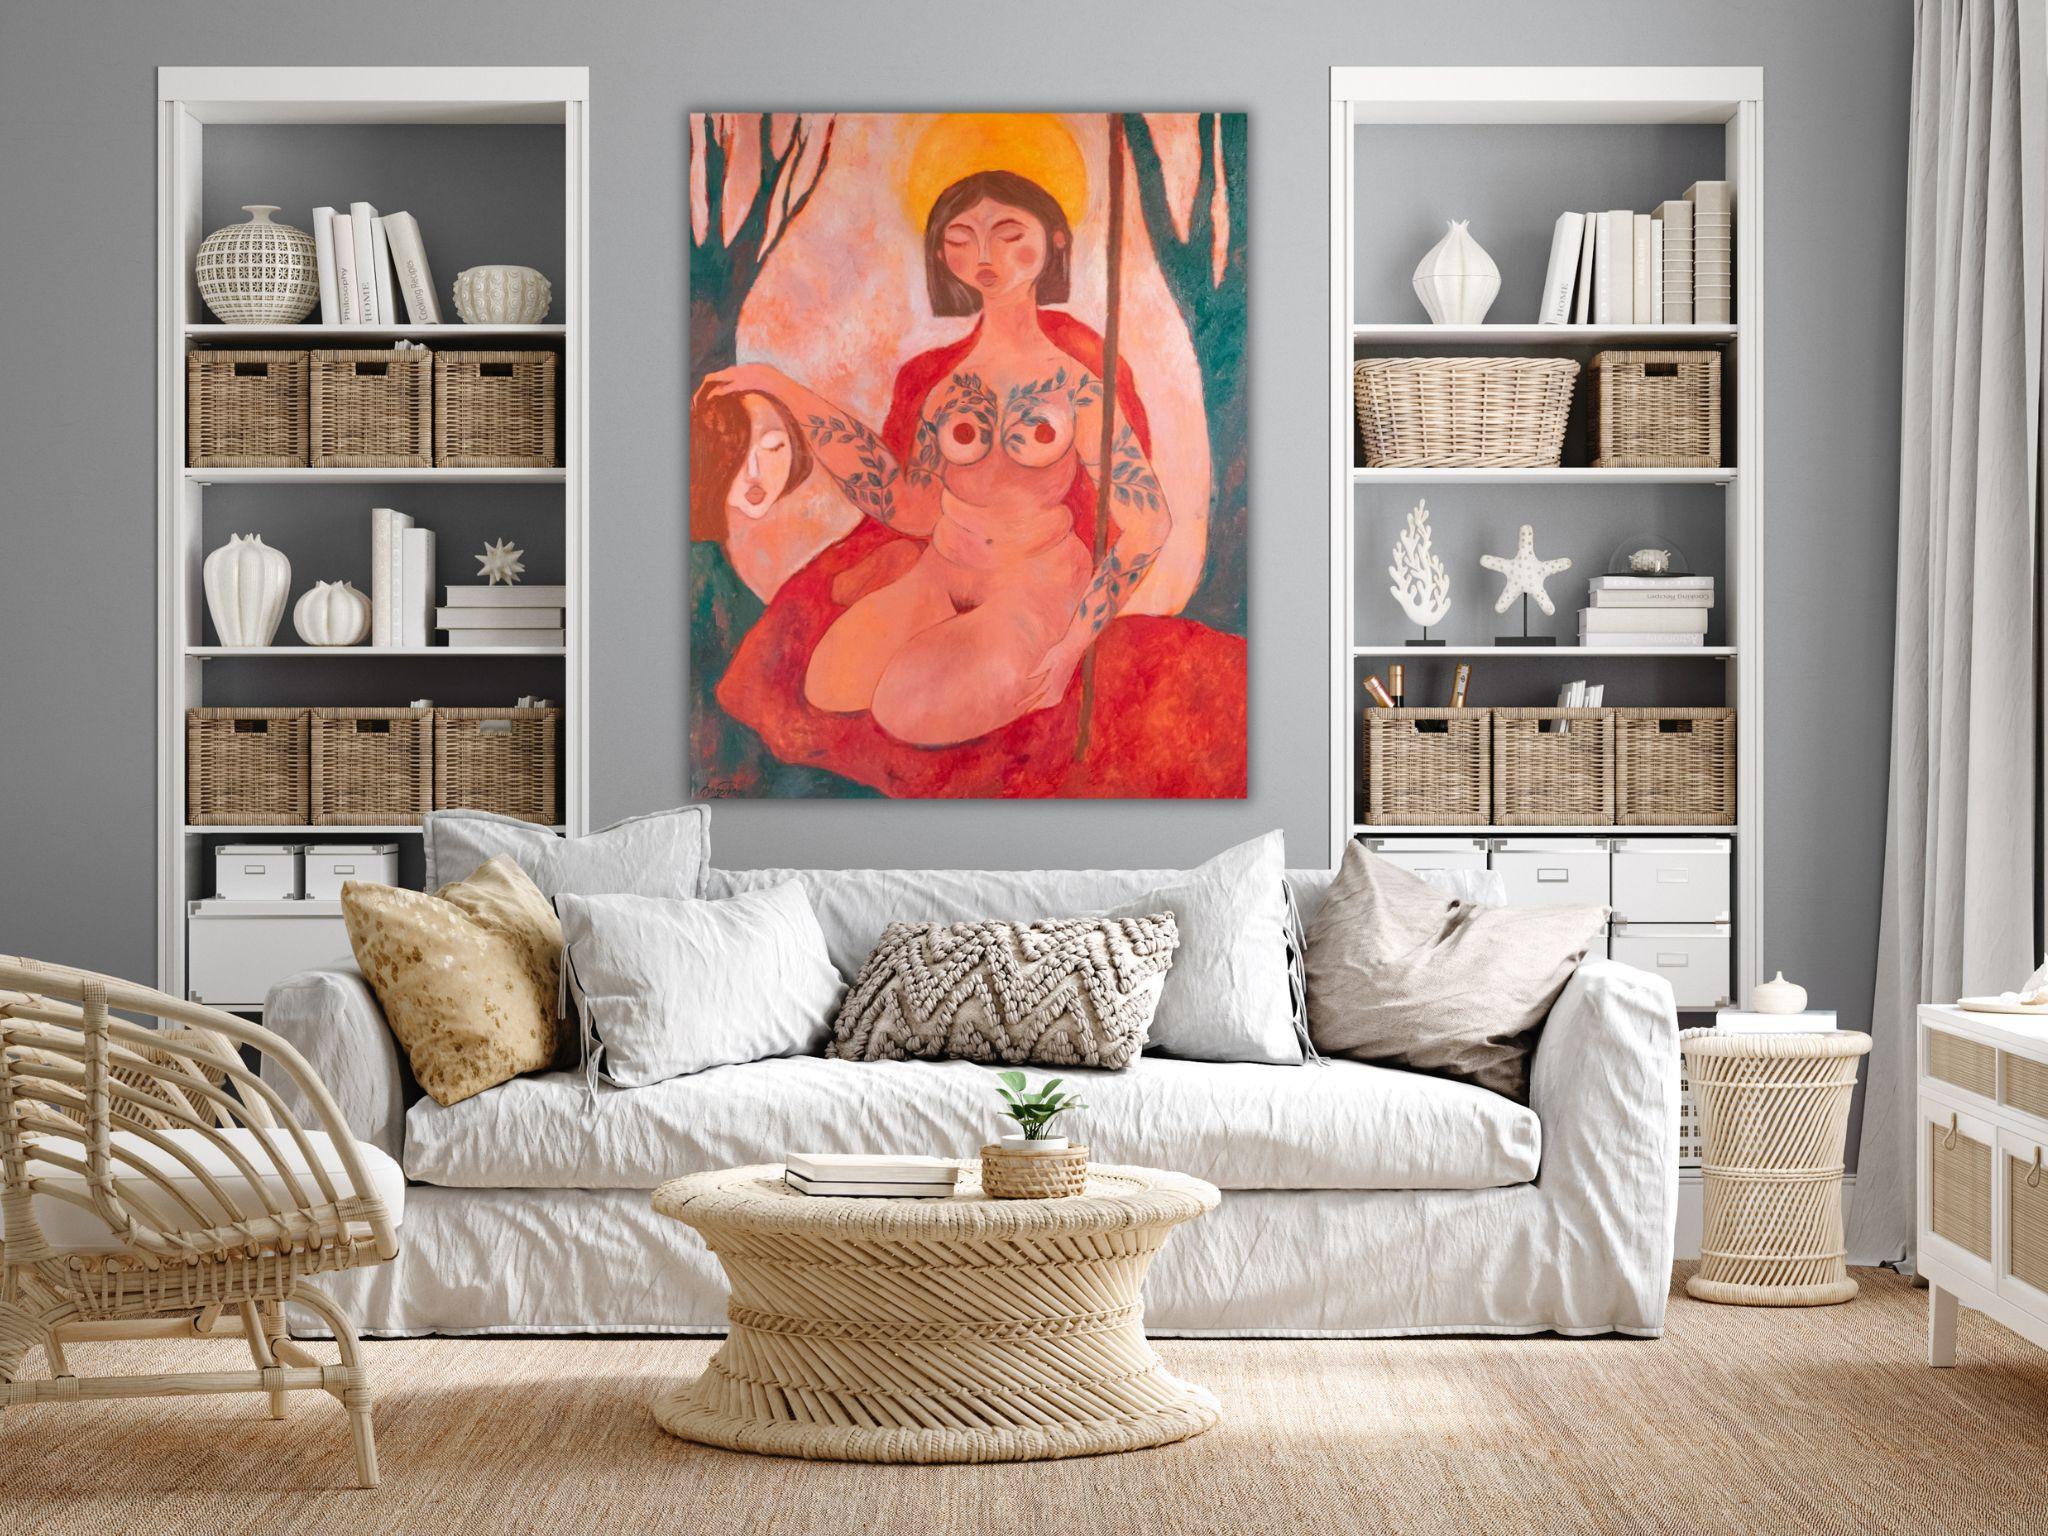 Mon principal ennemi. Peinture à l'huile figurative contemporaine. Symbolisme du pouvoir de la femme. Rouge - Painting de Dasha Pogodina